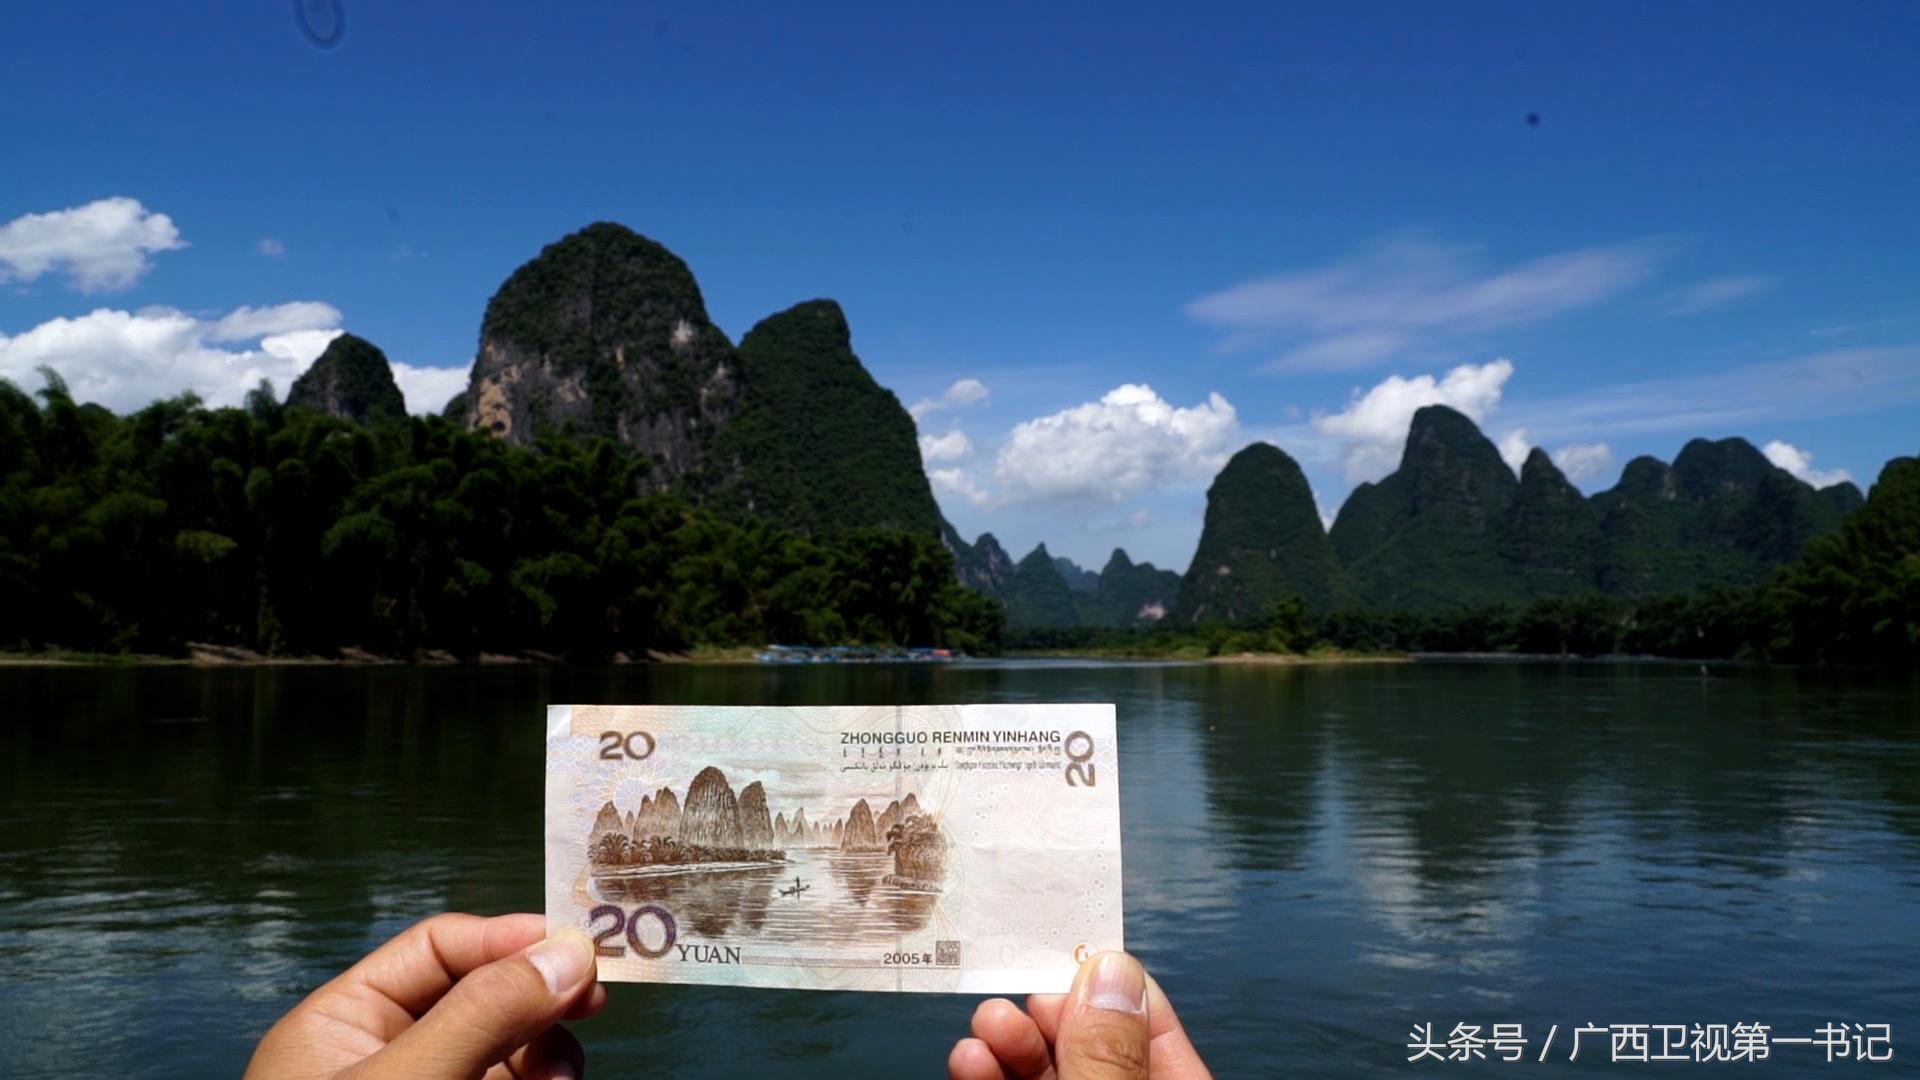 20块钱后面印的是桂林哪一座山